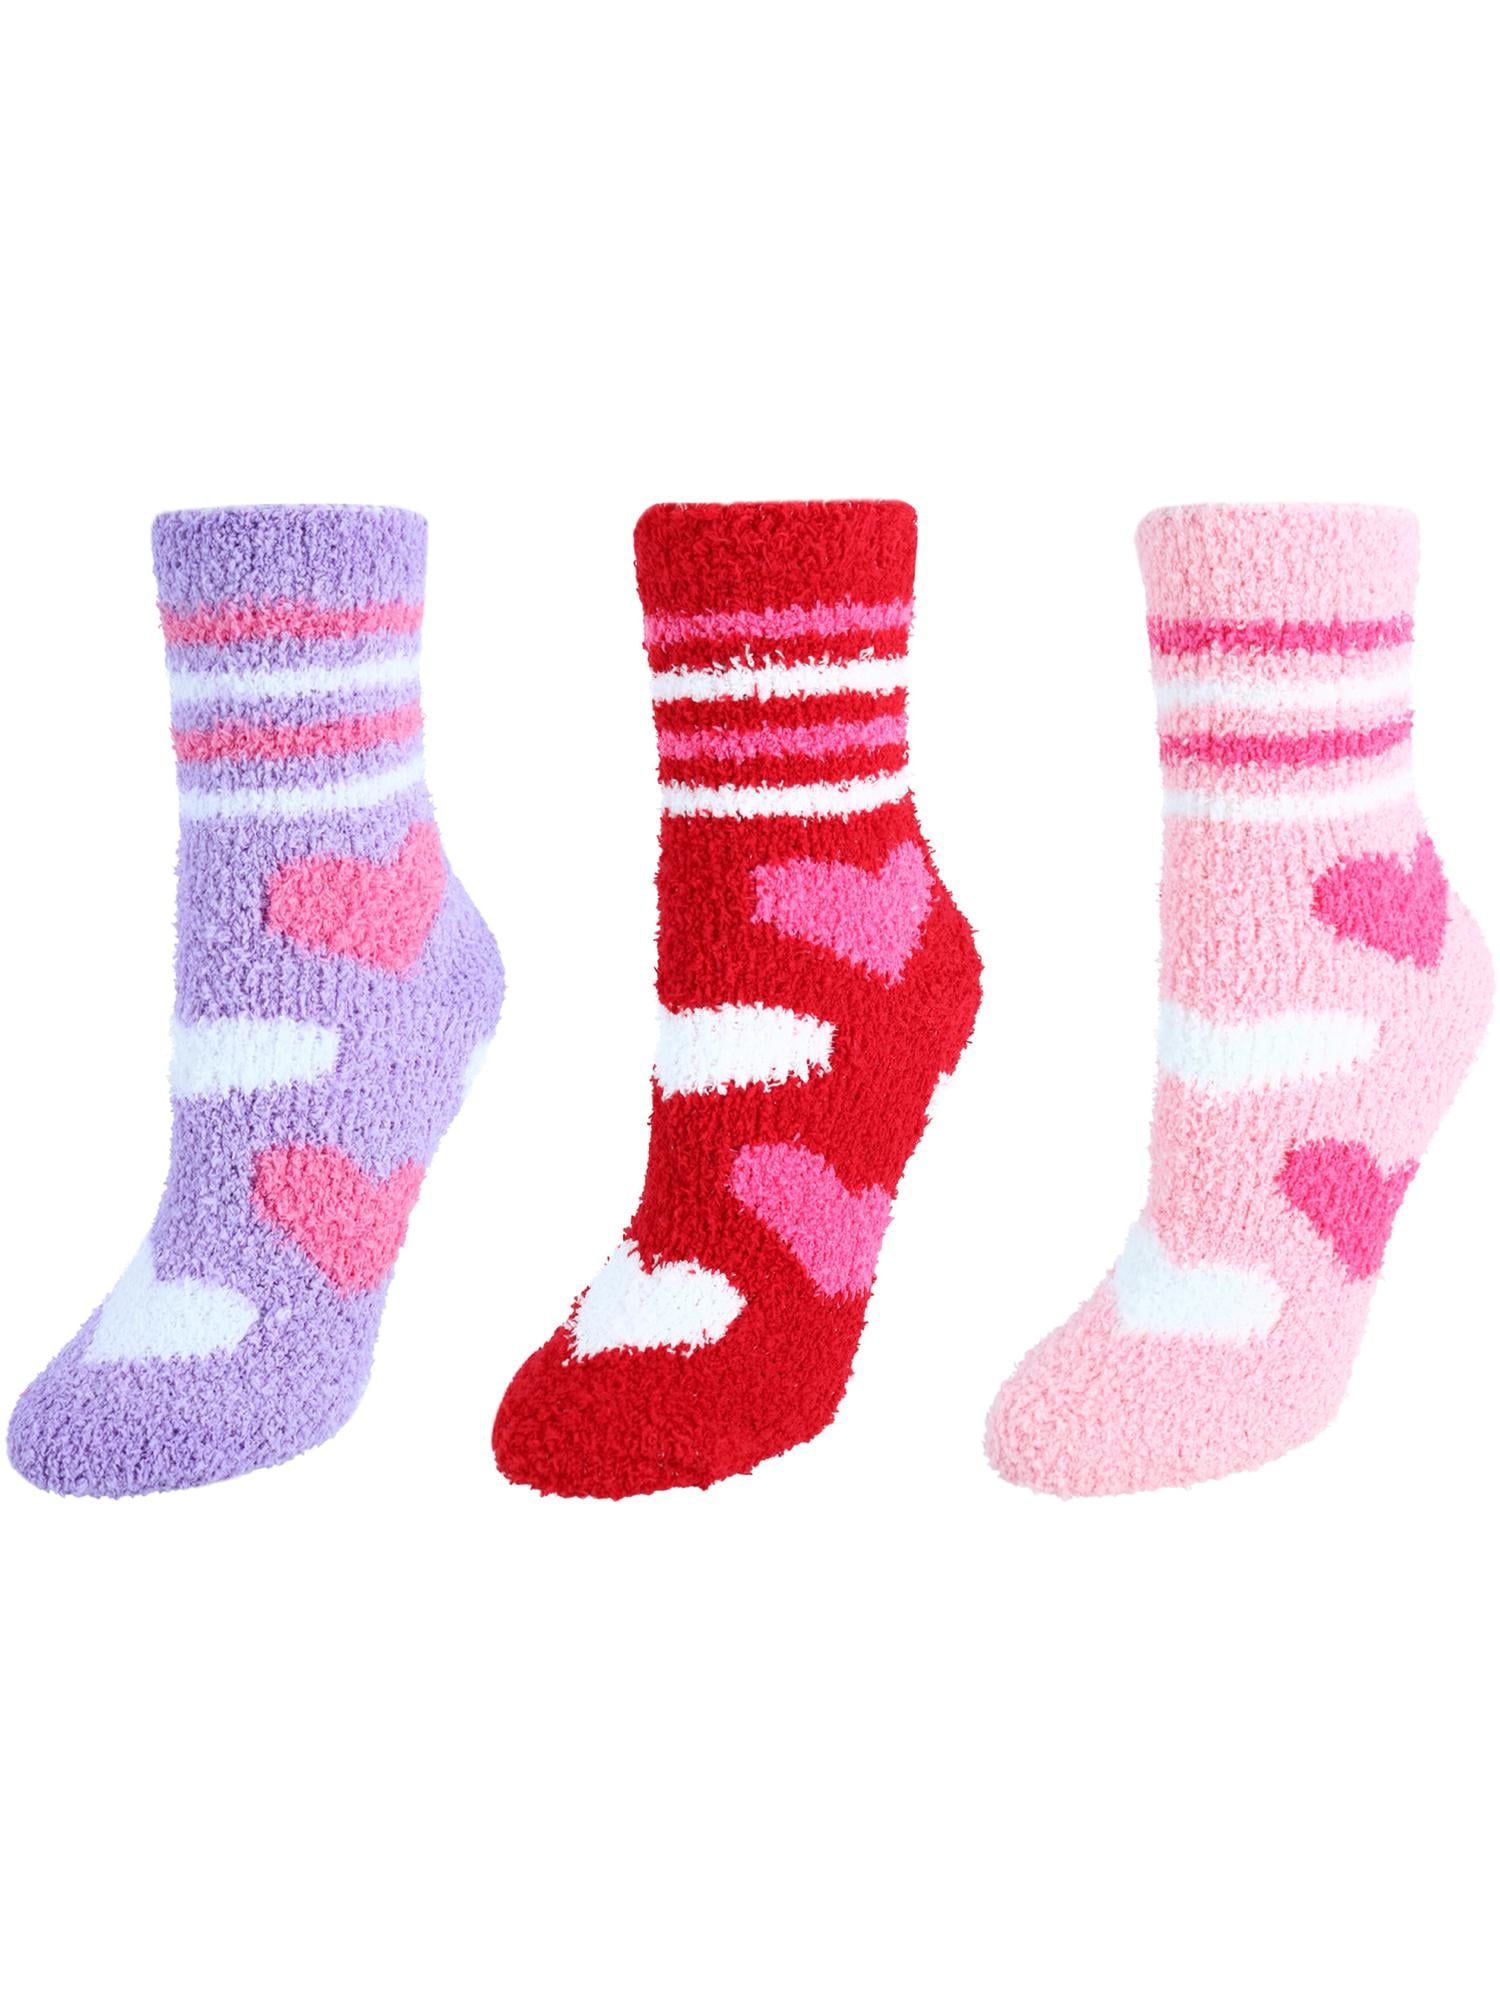 6 Pairs Boys Girls School Plain Short Ankle Cotton Socks White 12.5-3.5